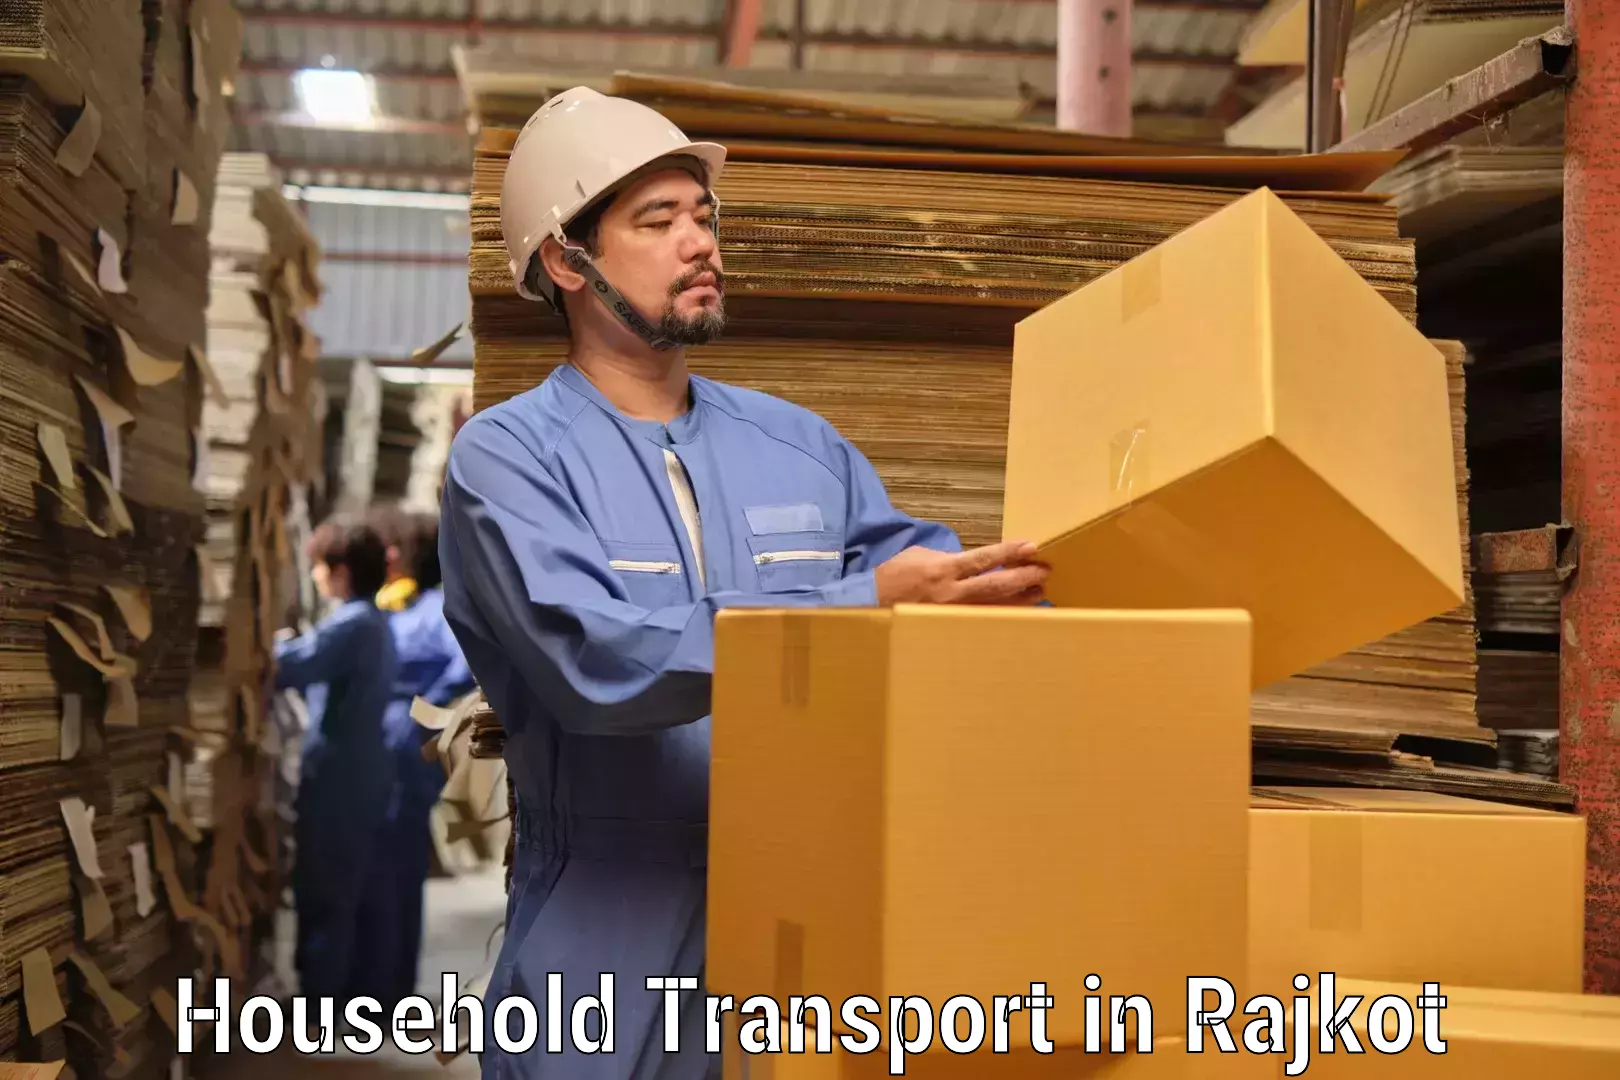 Household goods transport in Rajkot